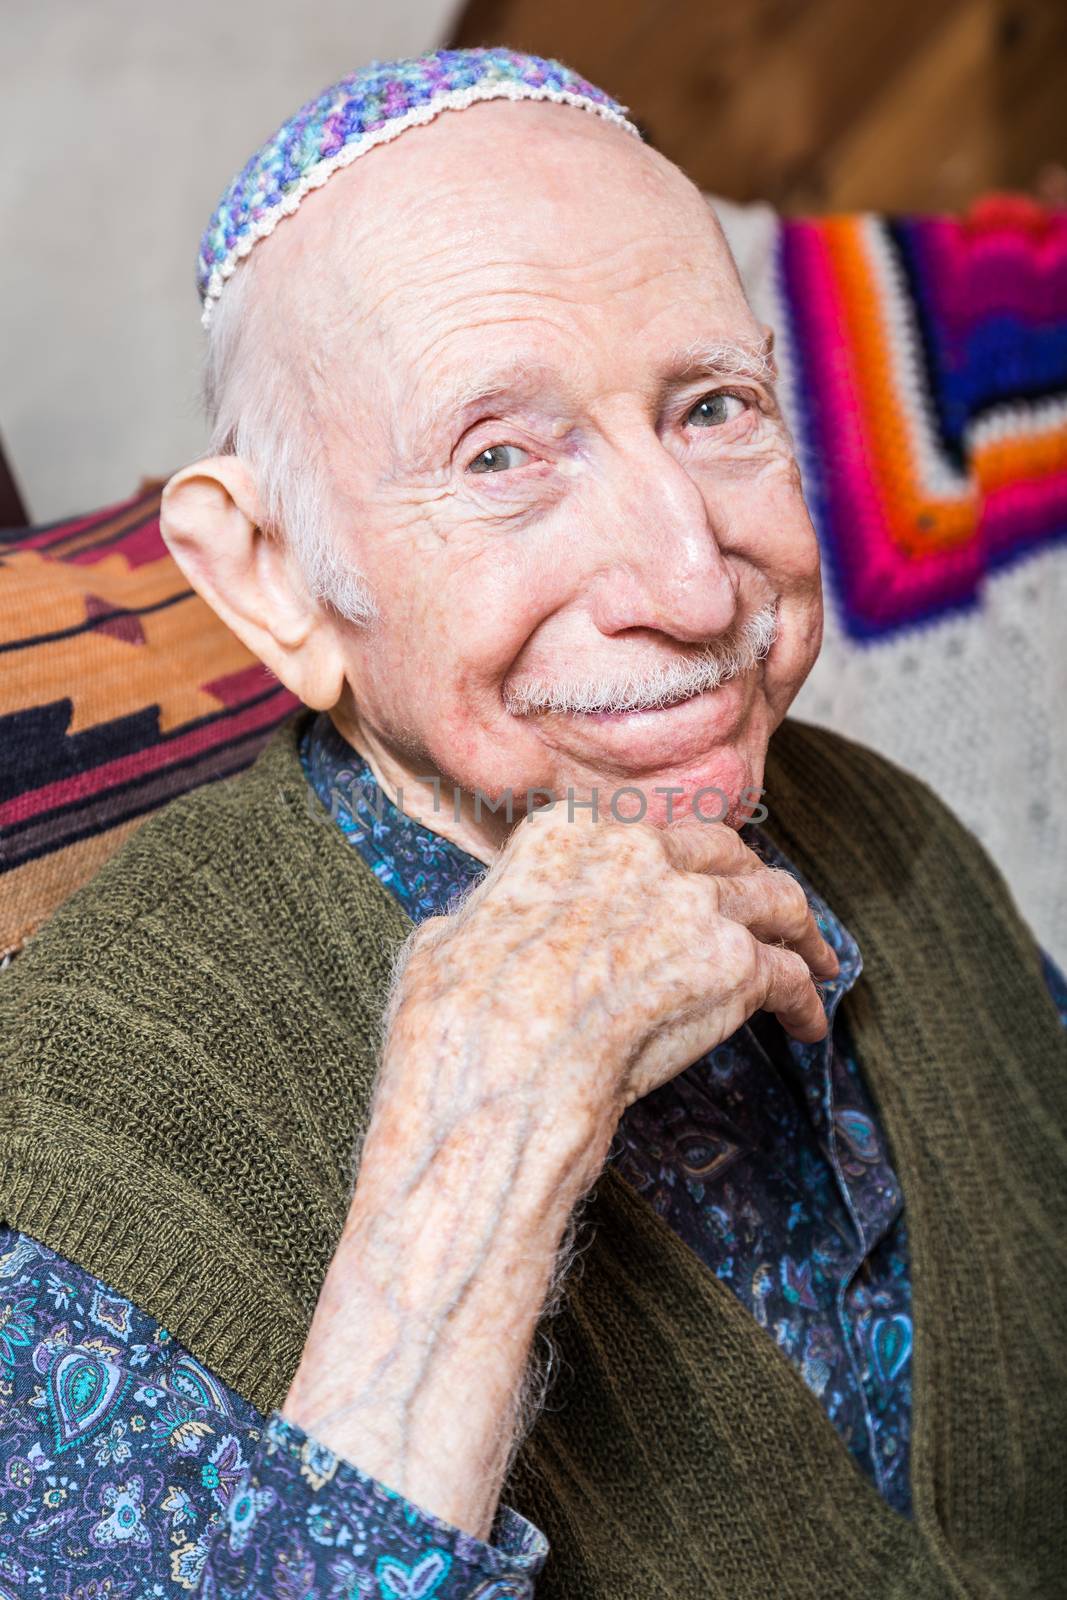 Elderly Gentleman Wearing Yarmulke by Creatista